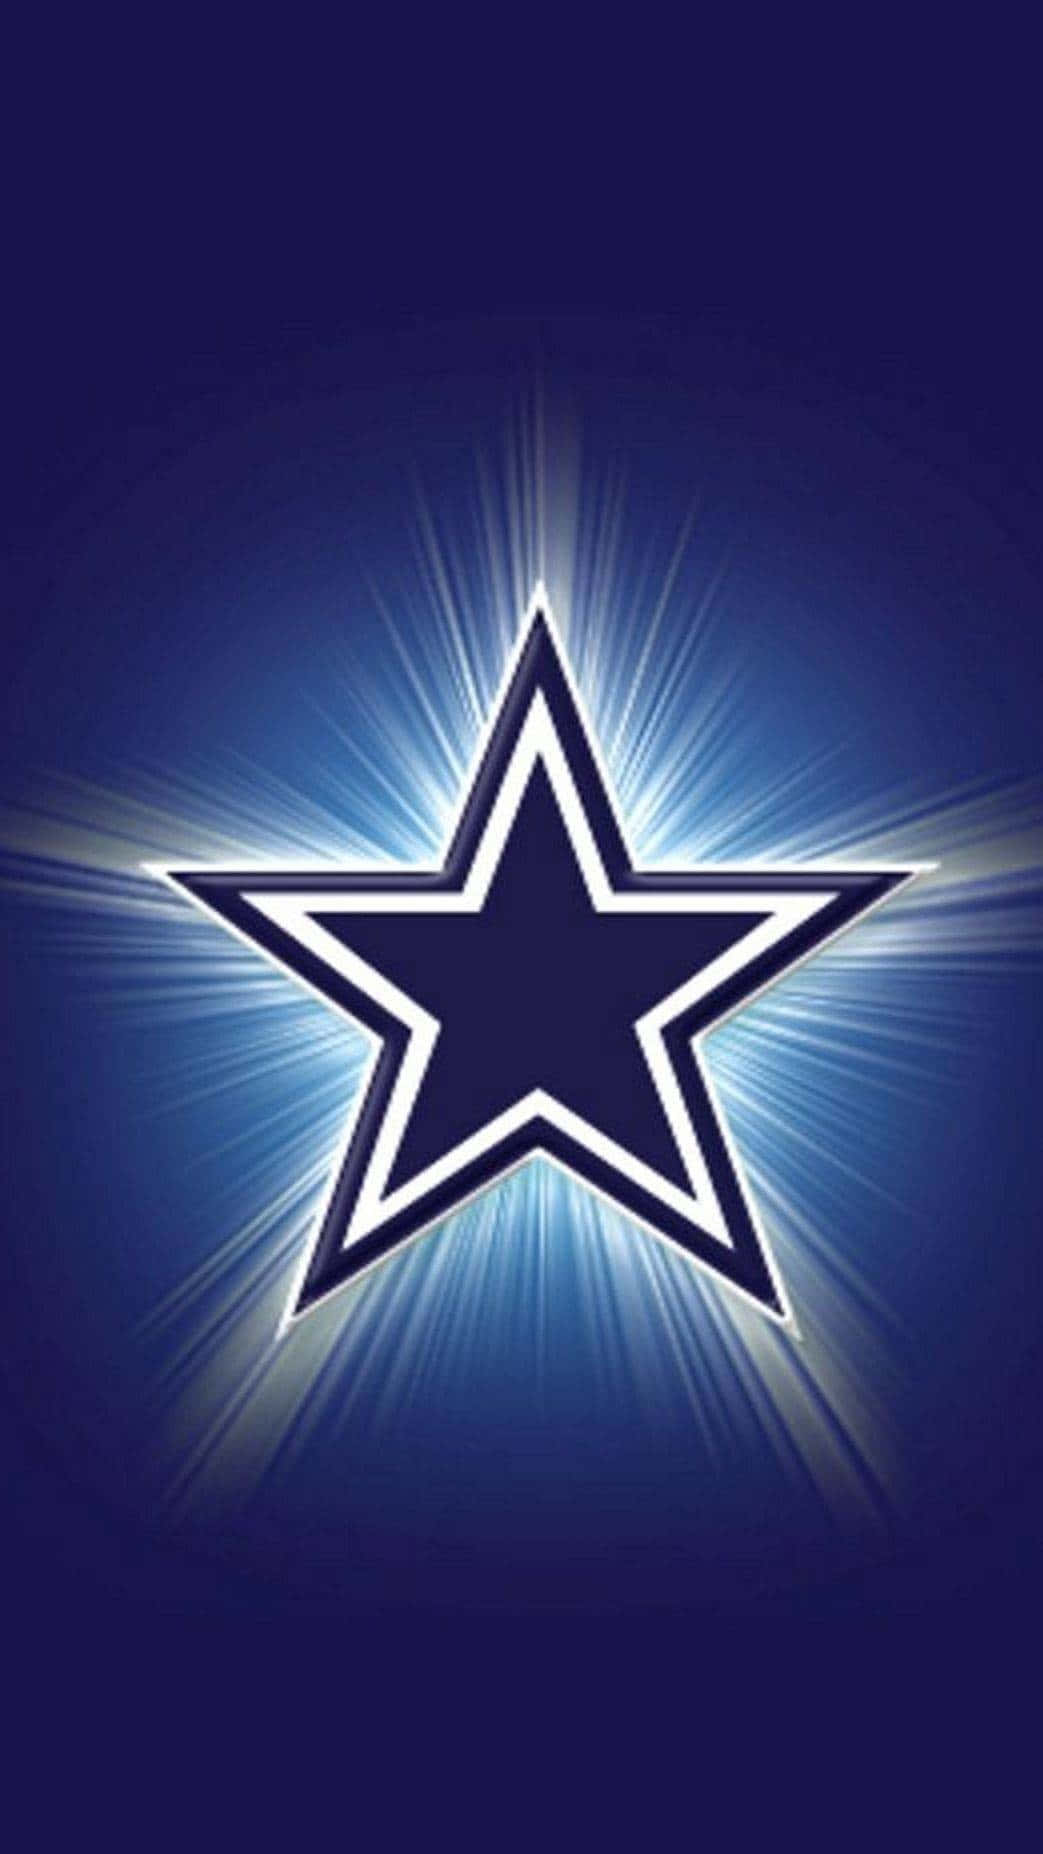 Strahlendesstar-logo Der Dallas Cowboys Für Das Iphone Wallpaper